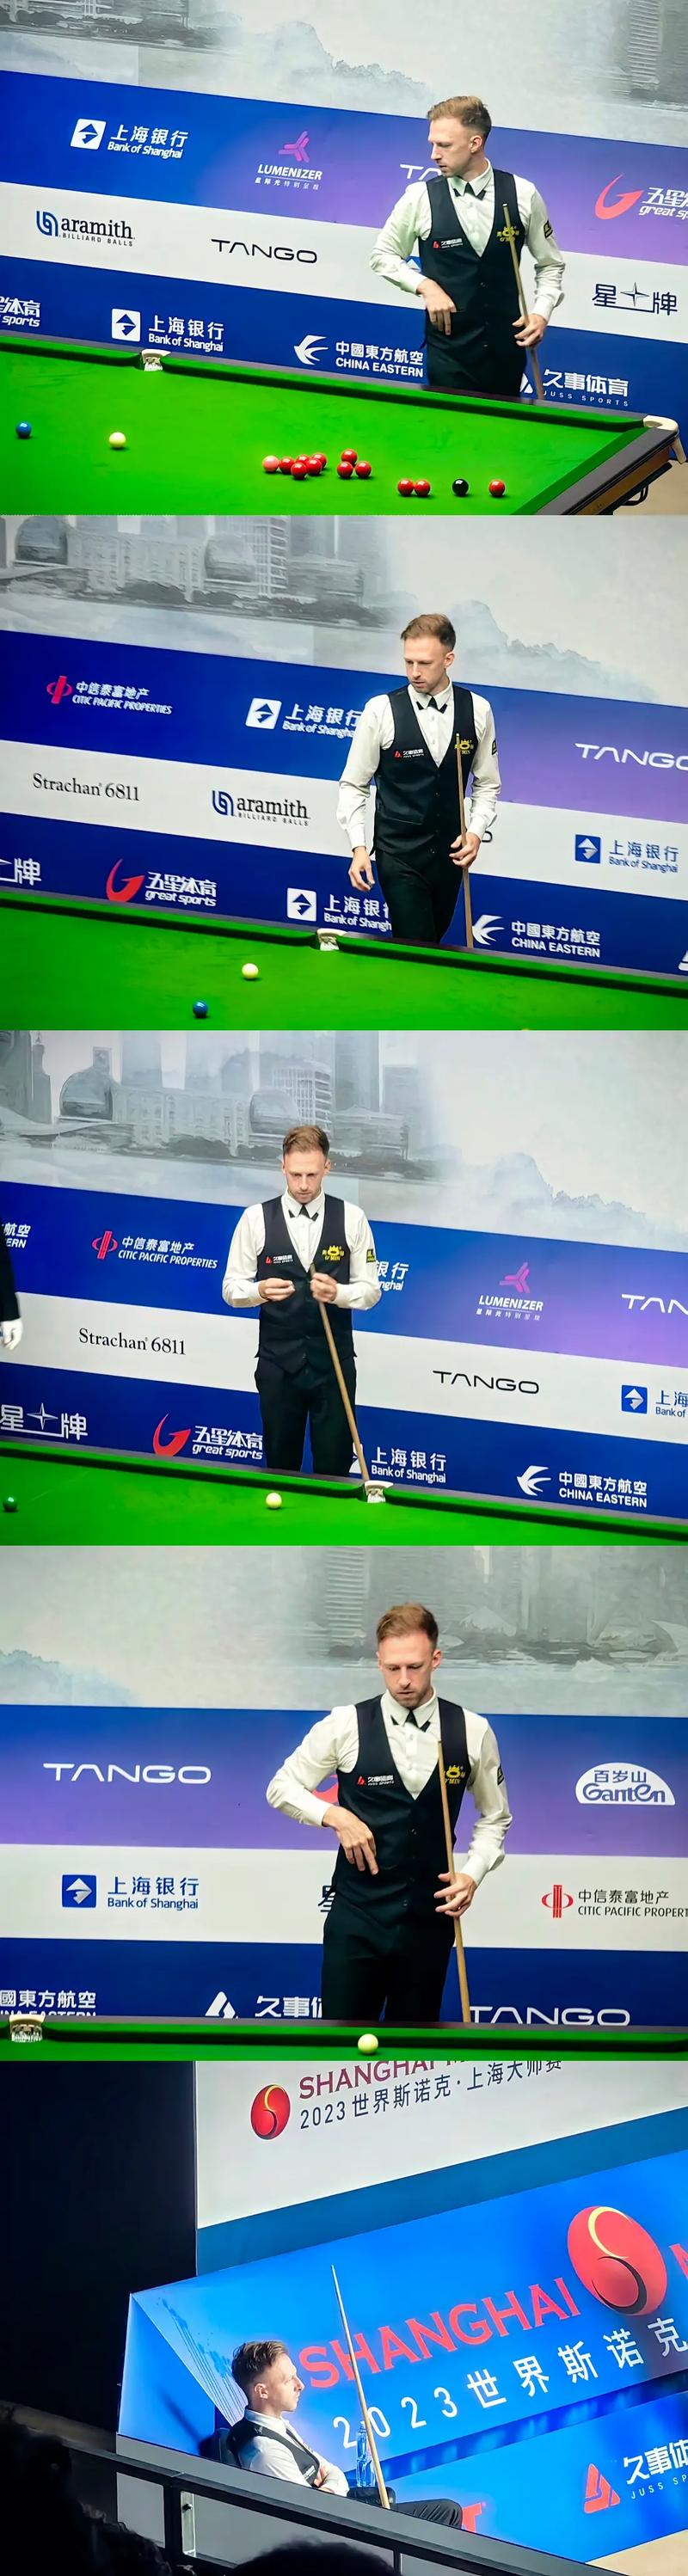 2013斯诺克上海大师赛